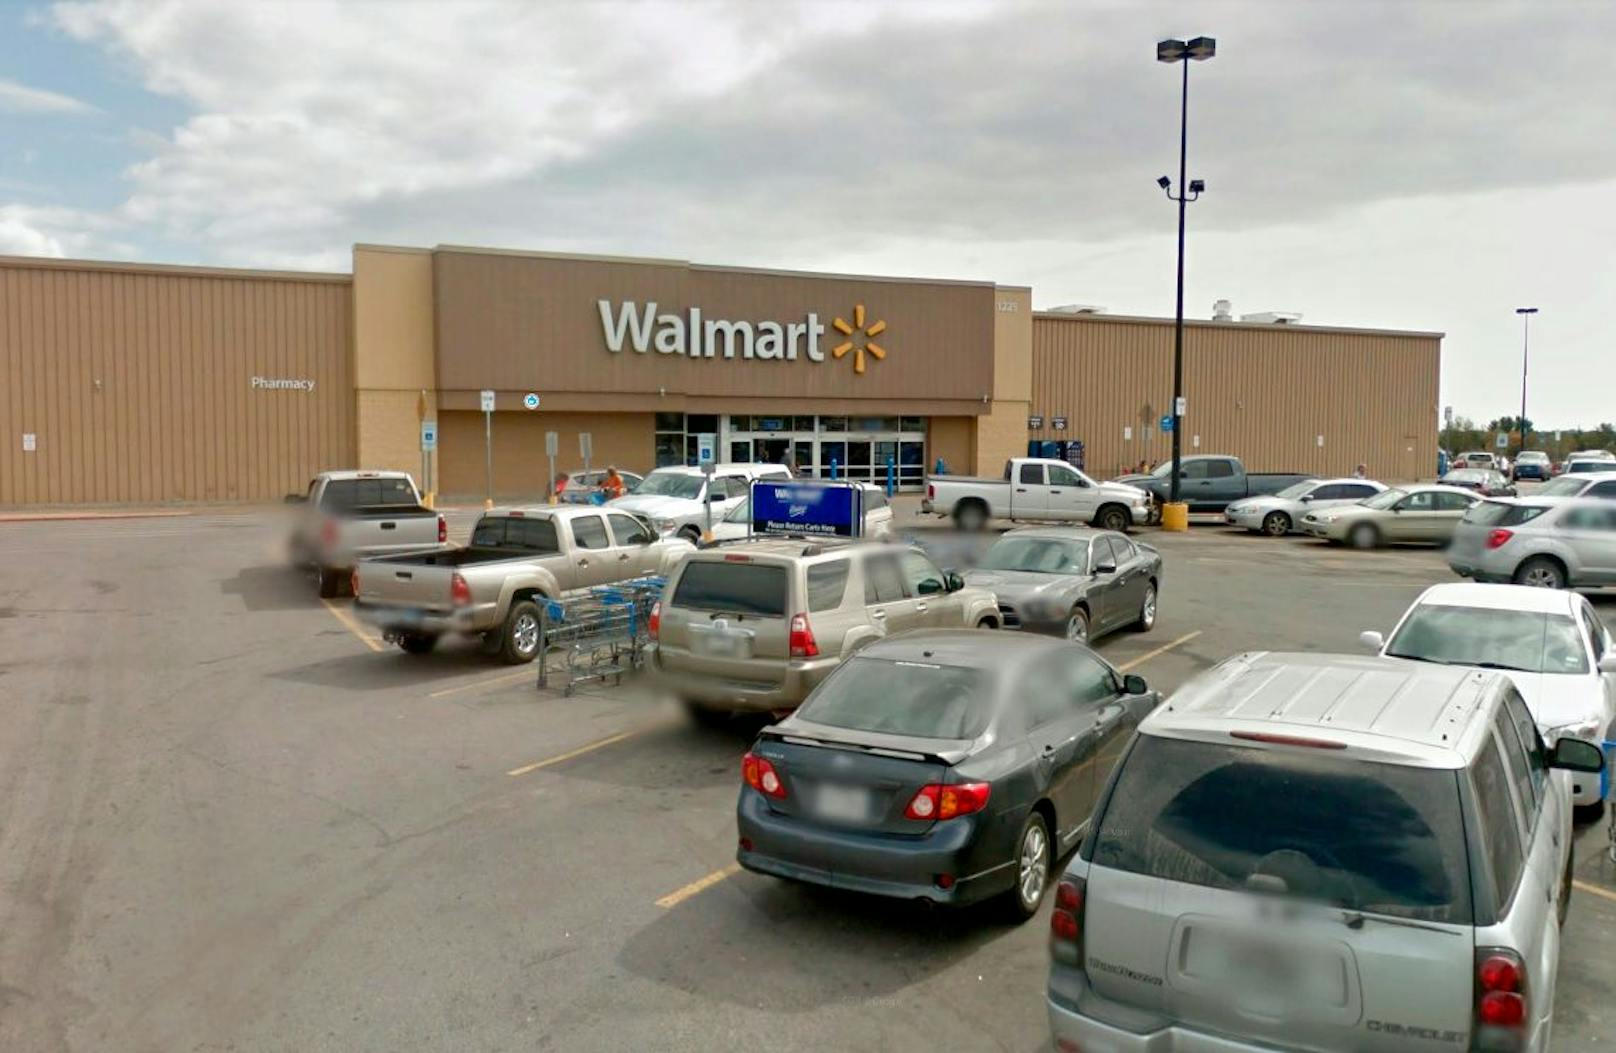 Schauplatz des bizarren Einkaufserlebnisses: die Walmart-Filiale in Crockett, Texas.